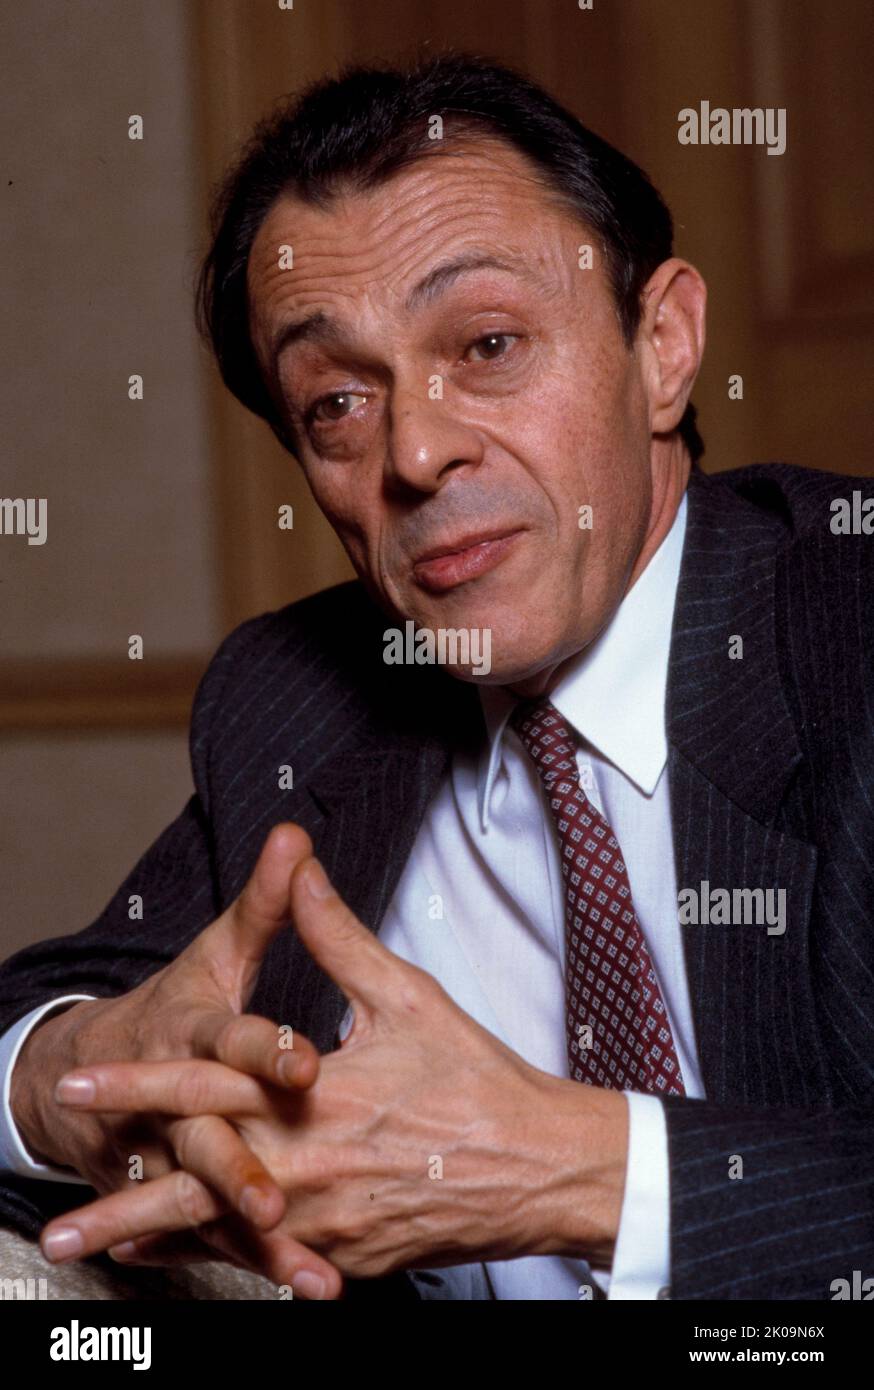 Michel Rocard (1930 - 2016) französischer Politiker und Mitglied der Sozialistischen Partei (PS). Von 1988 bis 1991 war er Premierminister unter Francois Mitterrand, in dessen Rahmen er das Revenu Minimum d'Insertion (RMI), ein soziales Mindestschutzprogramm für Indigente, ins Leben gerufen und die Matignon-Abkommen über den Status Neukaledoniens erreicht hat. Er war Mitglied des Europäischen Parlaments und war bis 2009 stark an der europäischen Politik beteiligt. Stockfoto